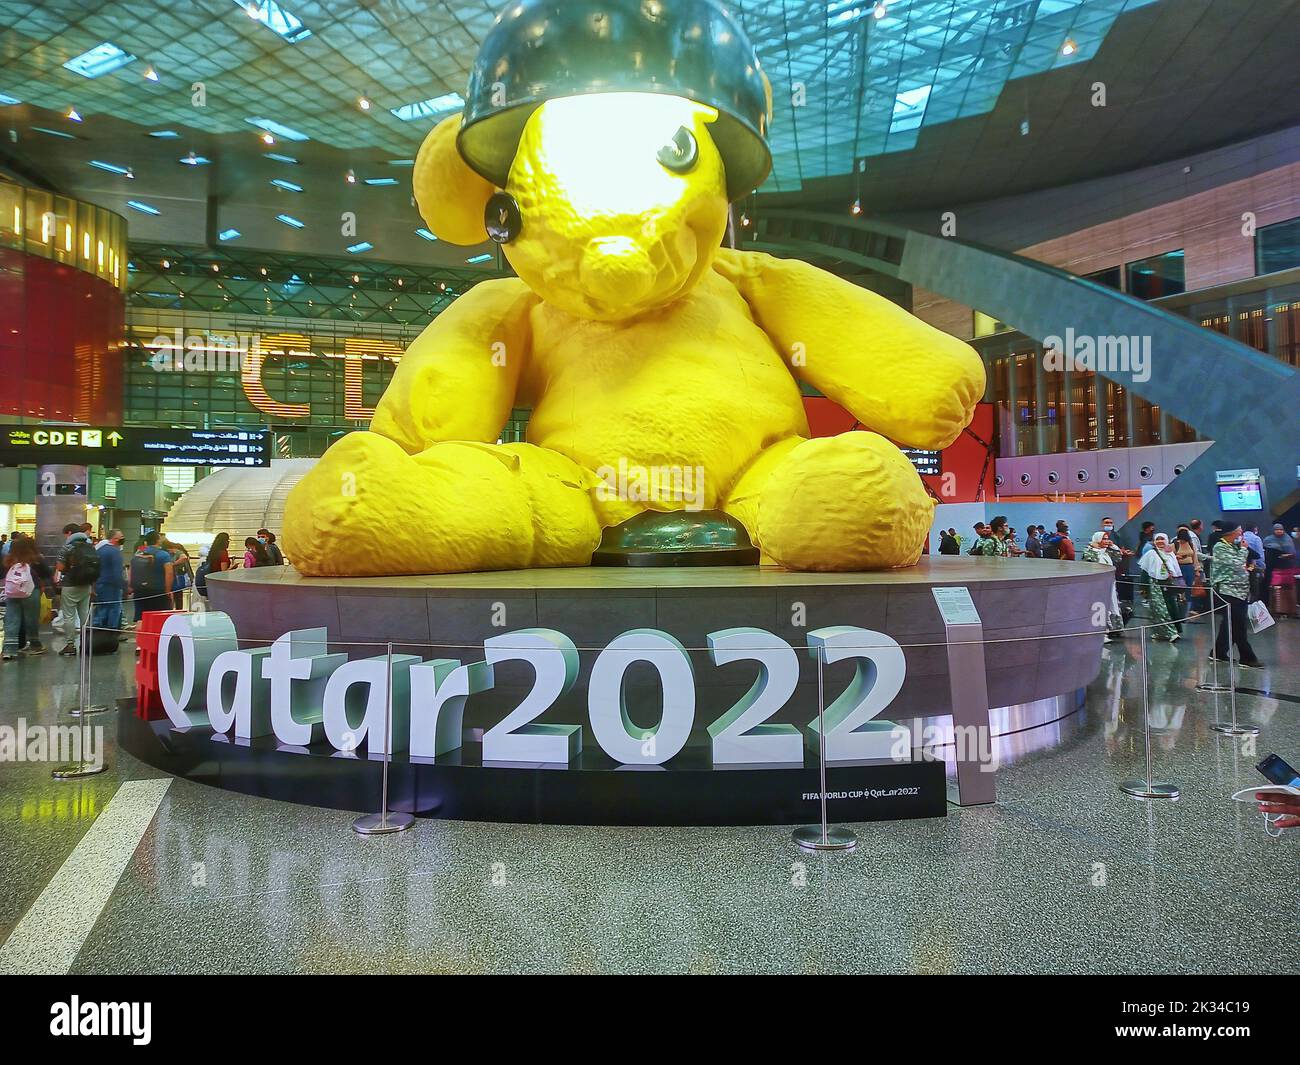 Accueil des passagers au port aérien de l'aéroport international de doha pour la coupe du monde du Qatar 2022, LA COUPE du monde DU QATAR 2022, la coupe du monde 2022, l'aéroport de doha Banque D'Images